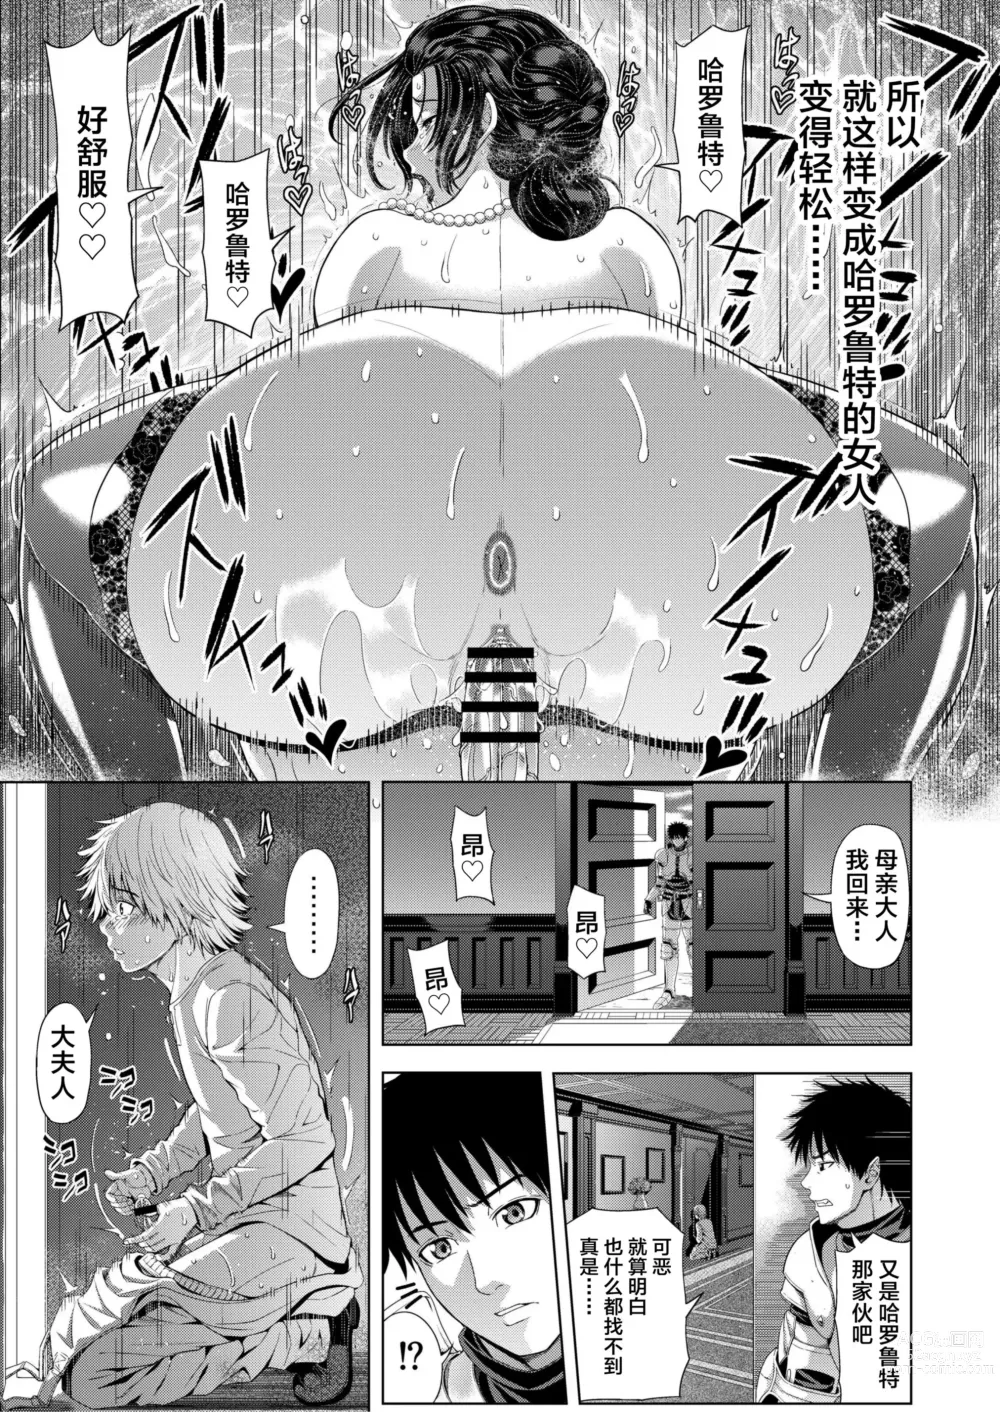 Page 33 of doujinshi Kyouki no Oukoku San no Shou